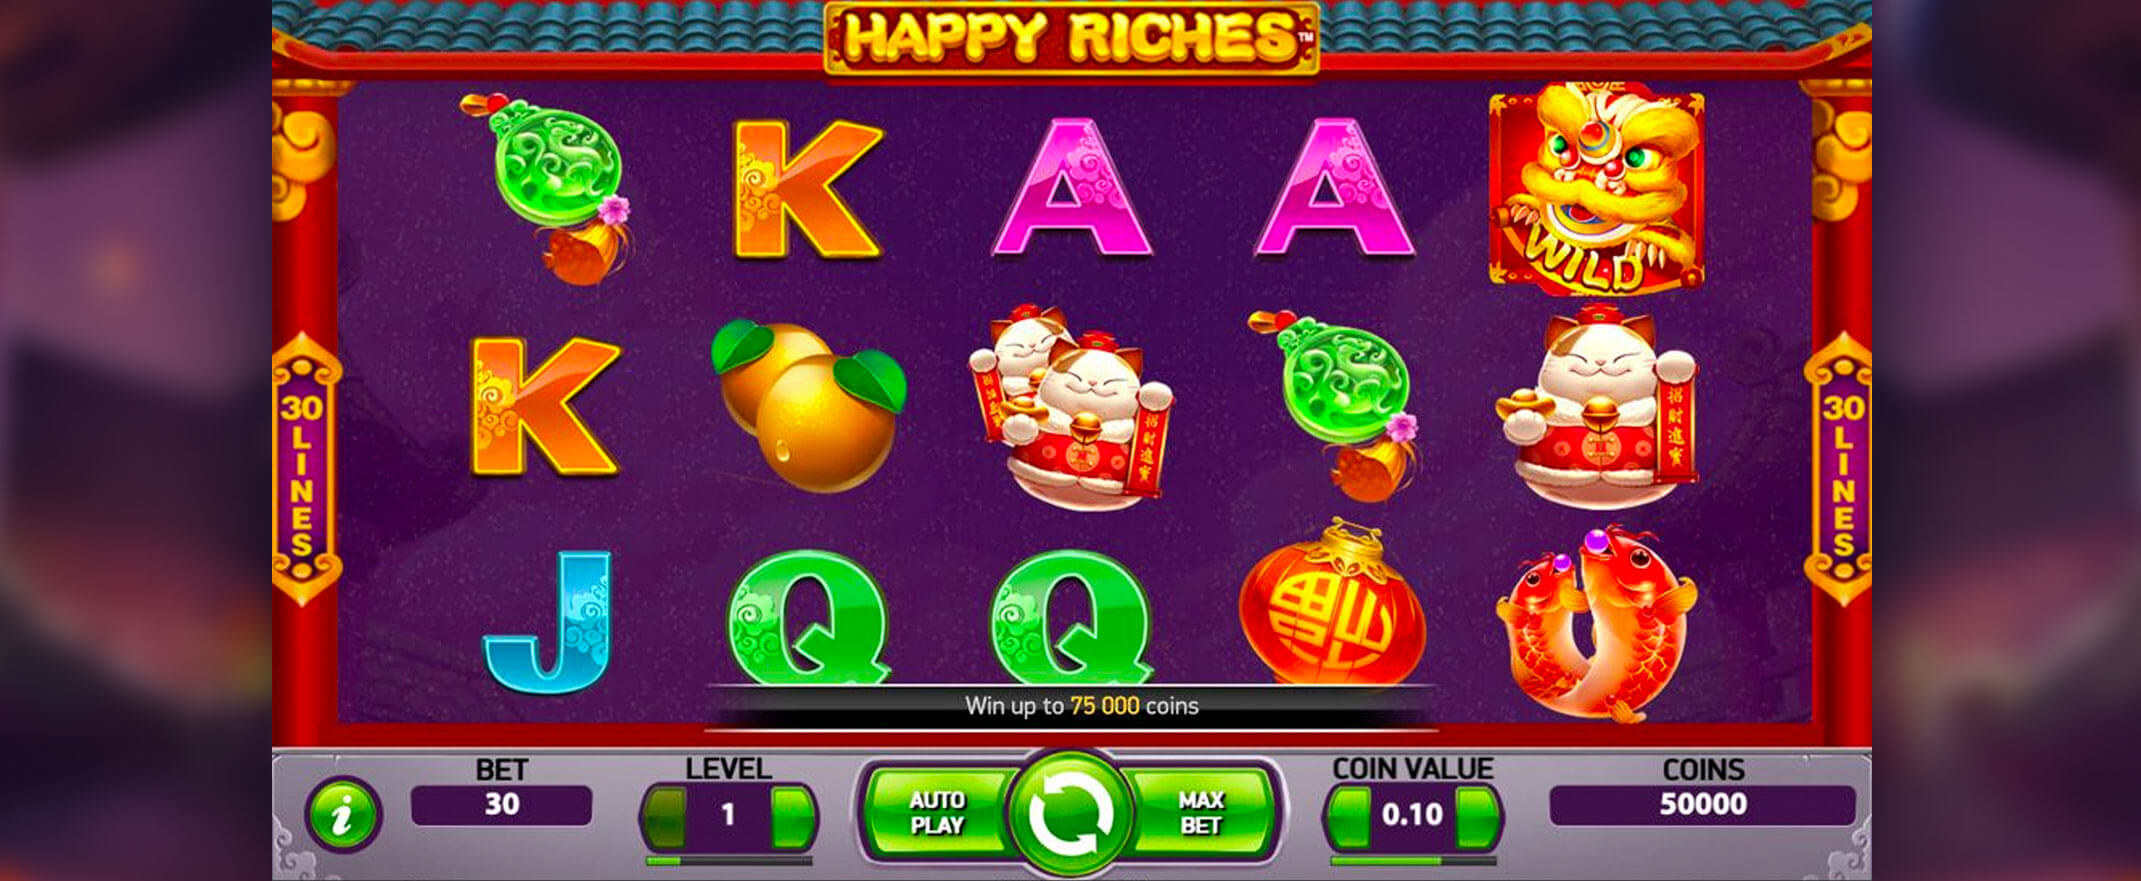 Happy Riches Spielautomaten-Bewertung